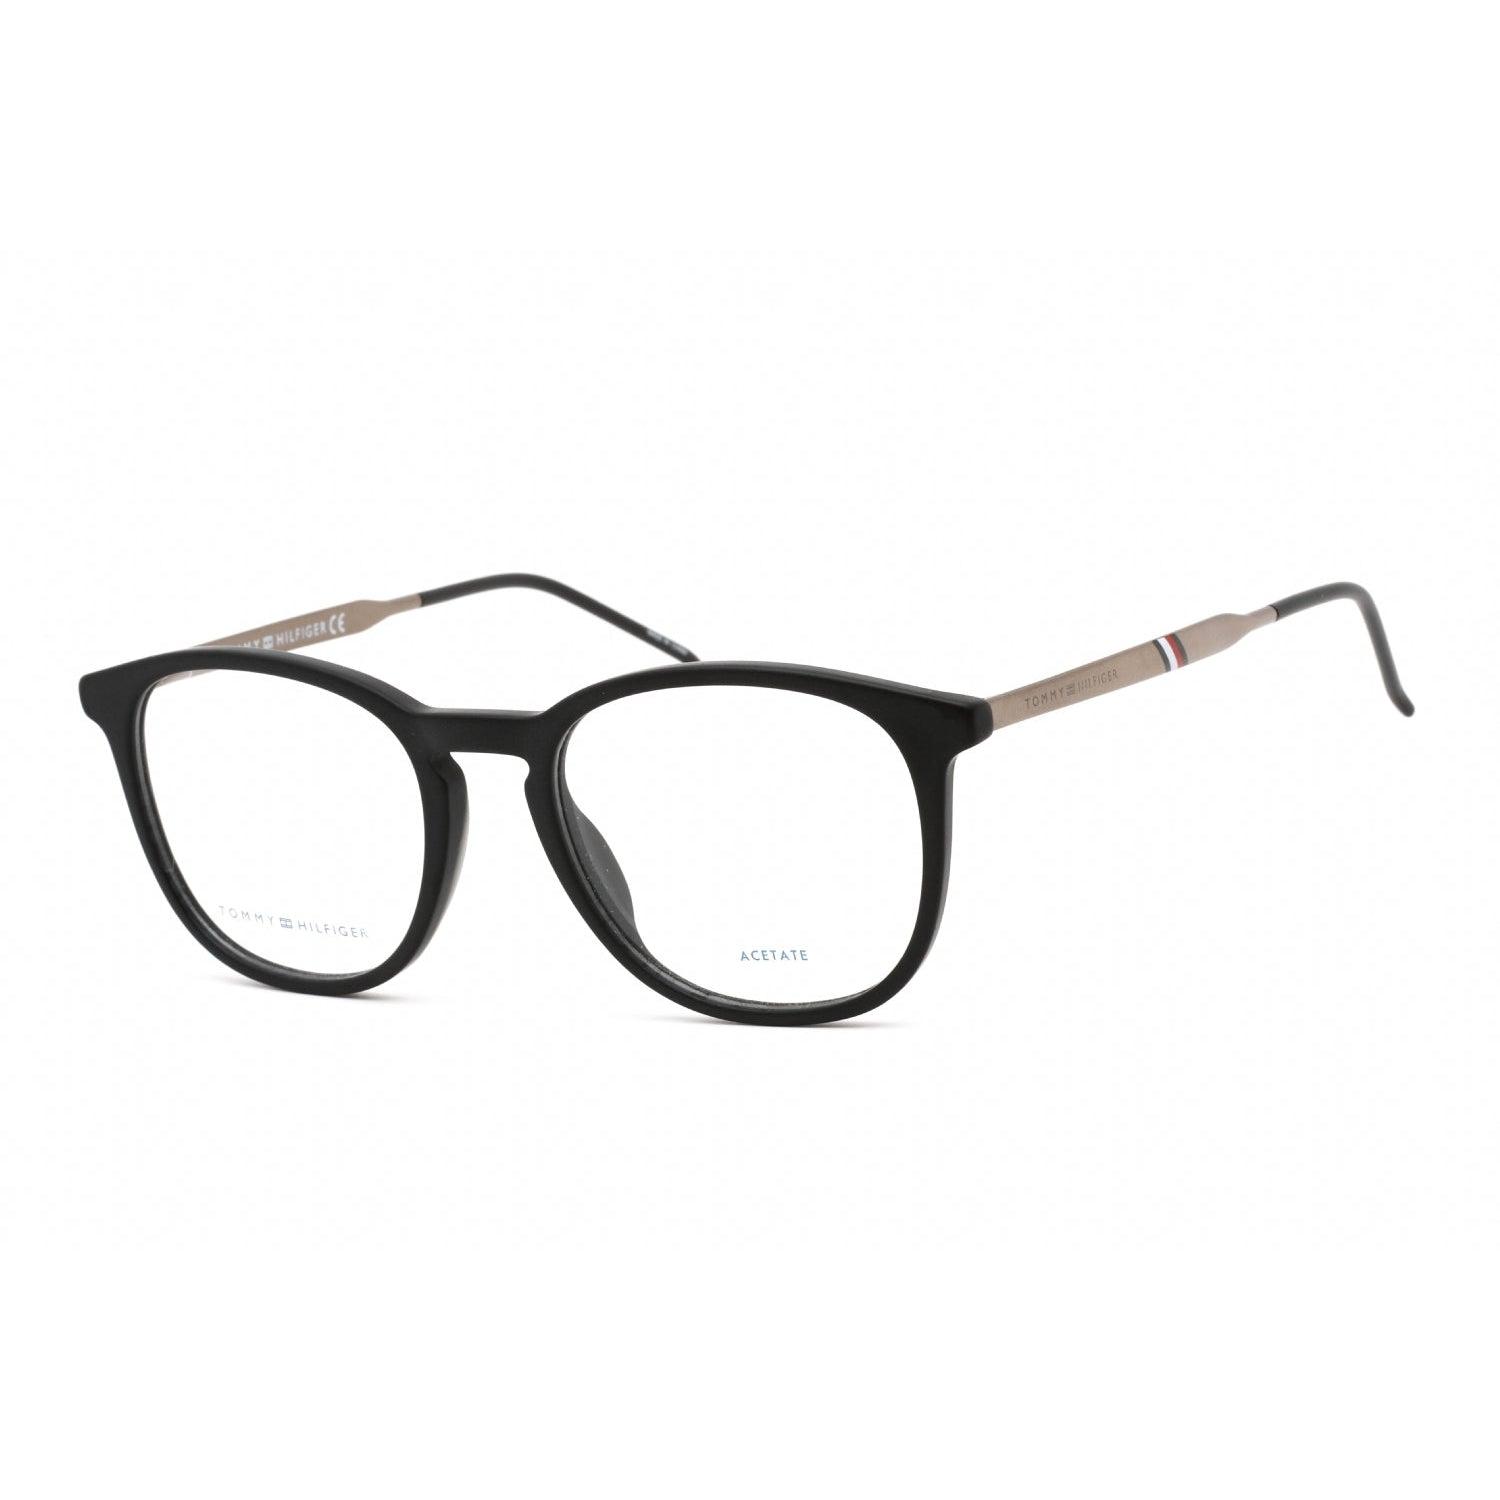 Tommy Hilfiger Th 1706 Eyeglasses Matte Black / Clear Demo Lens in ...